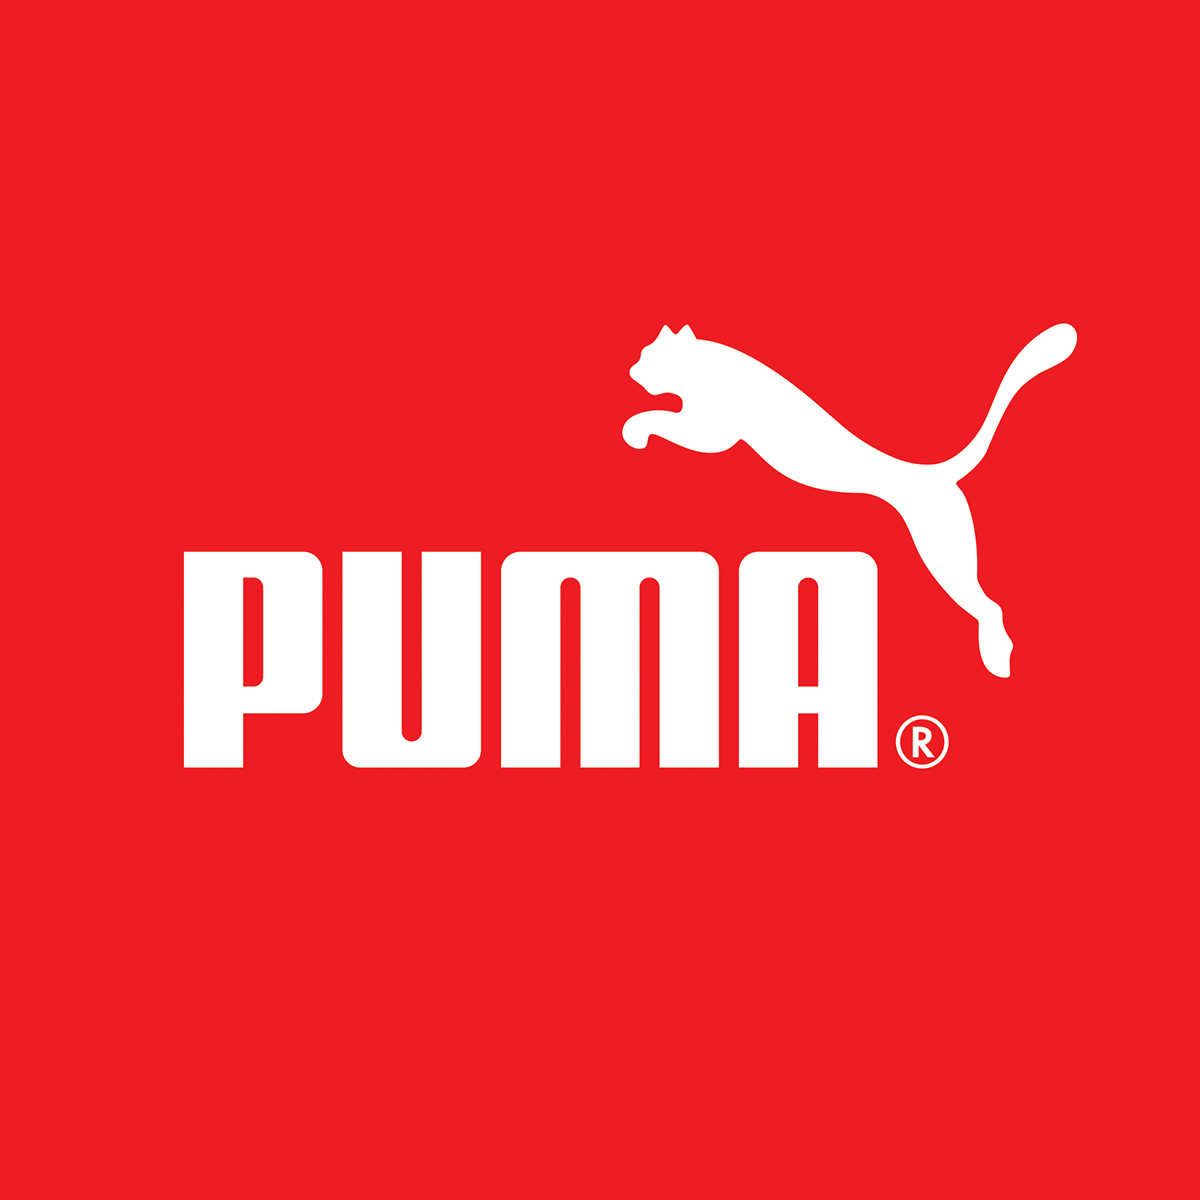 Puma, Next Galleria Malls